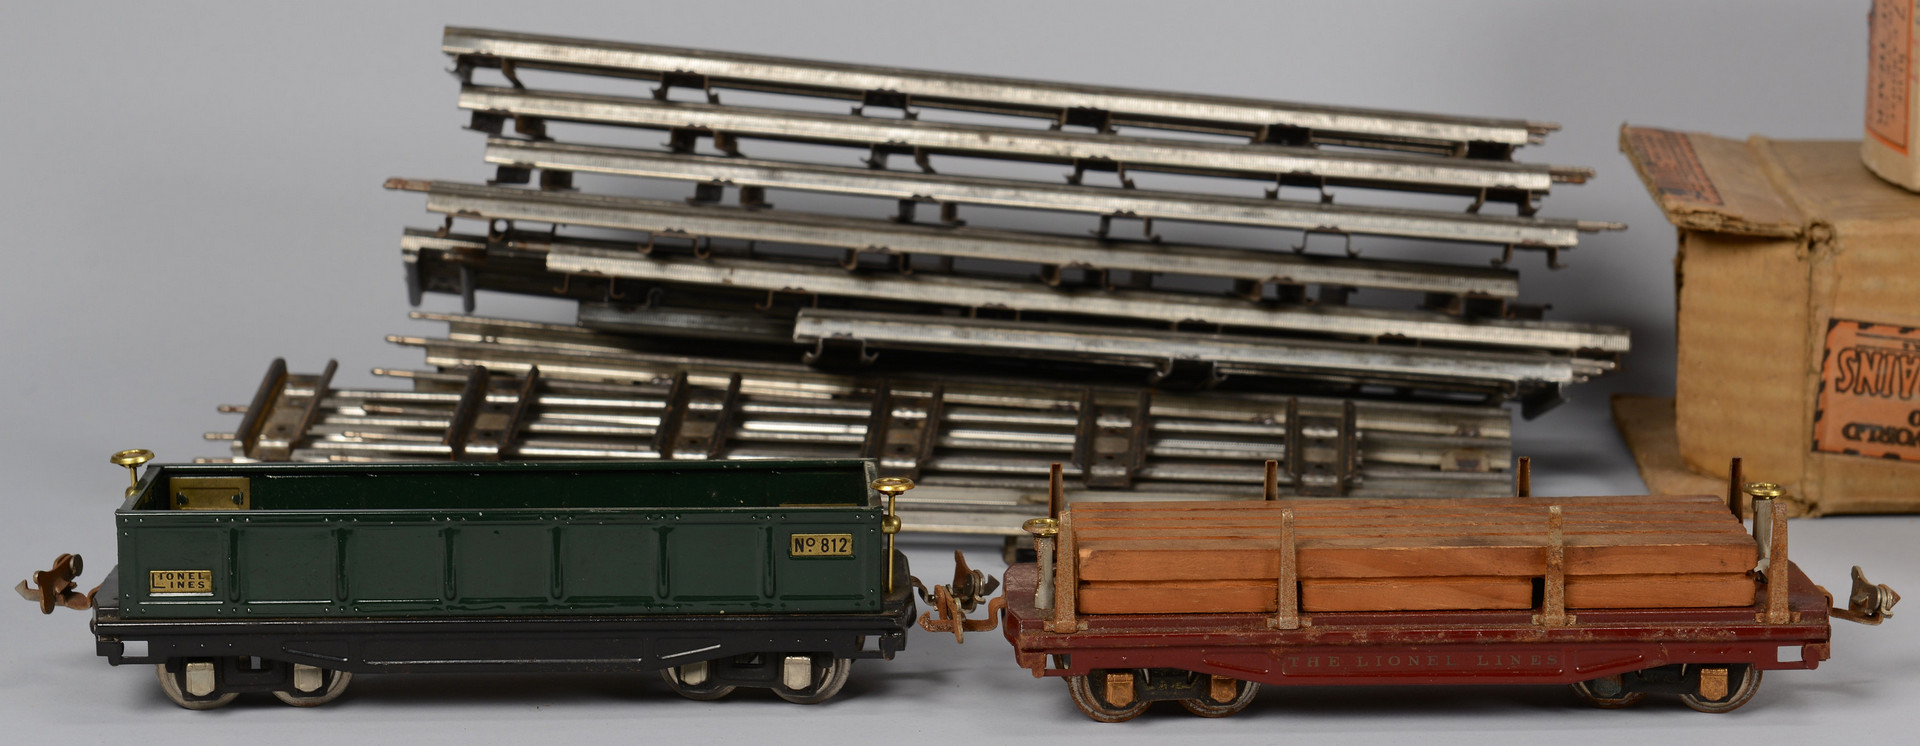 Lot 464: Large Lionel O Gauge Train Set, 13 total